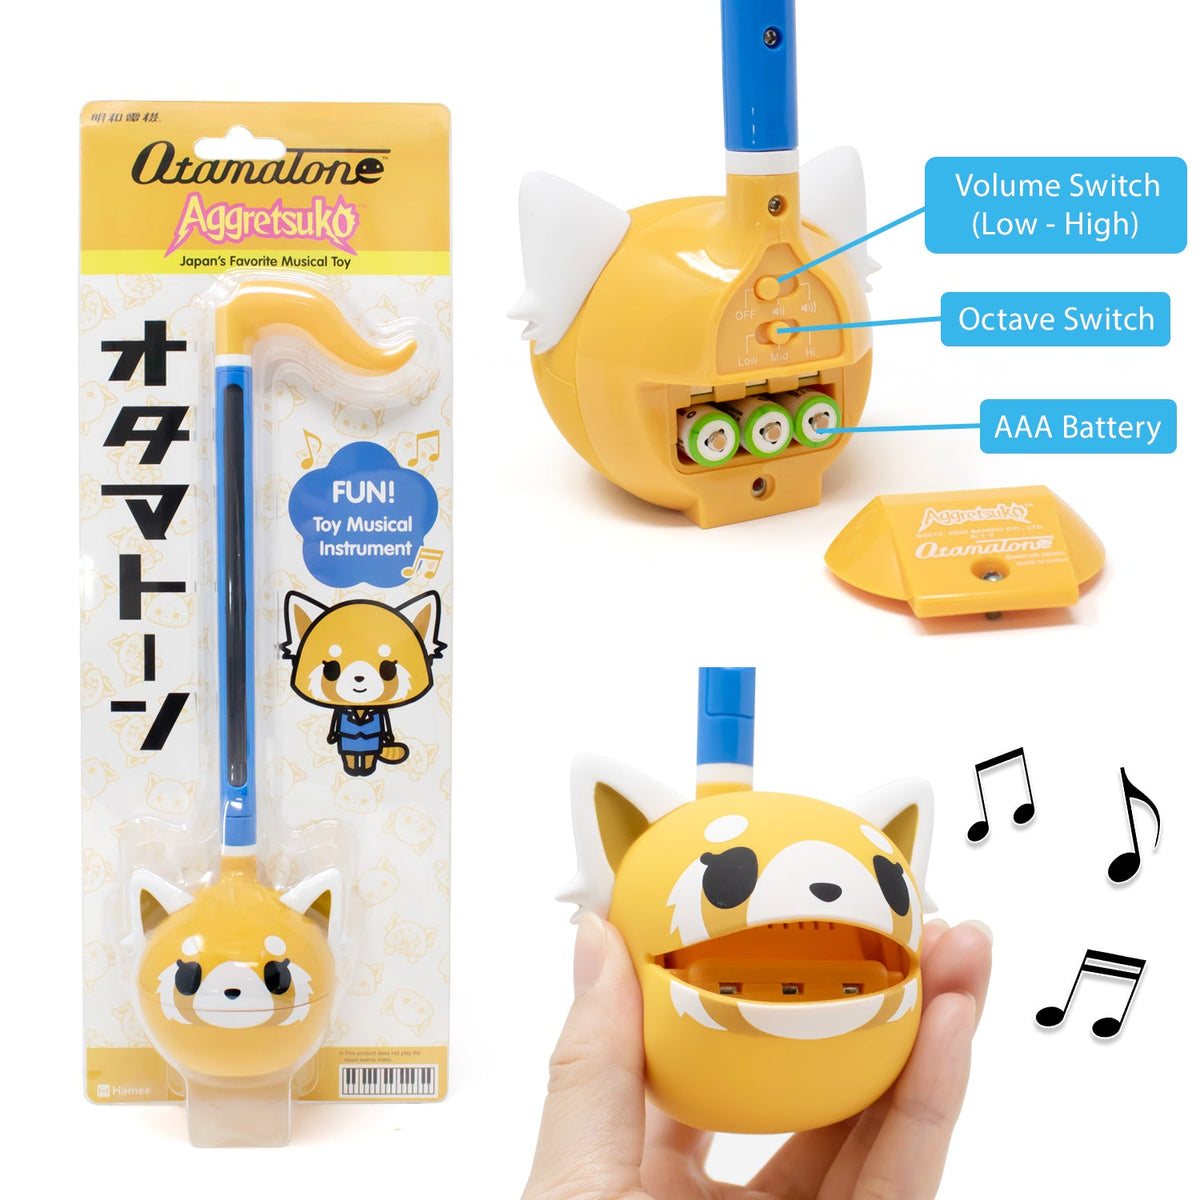 Aggretsuko Otamatone Musical Toy (Sweet) Otamatone Hamee.com - Hamee US   